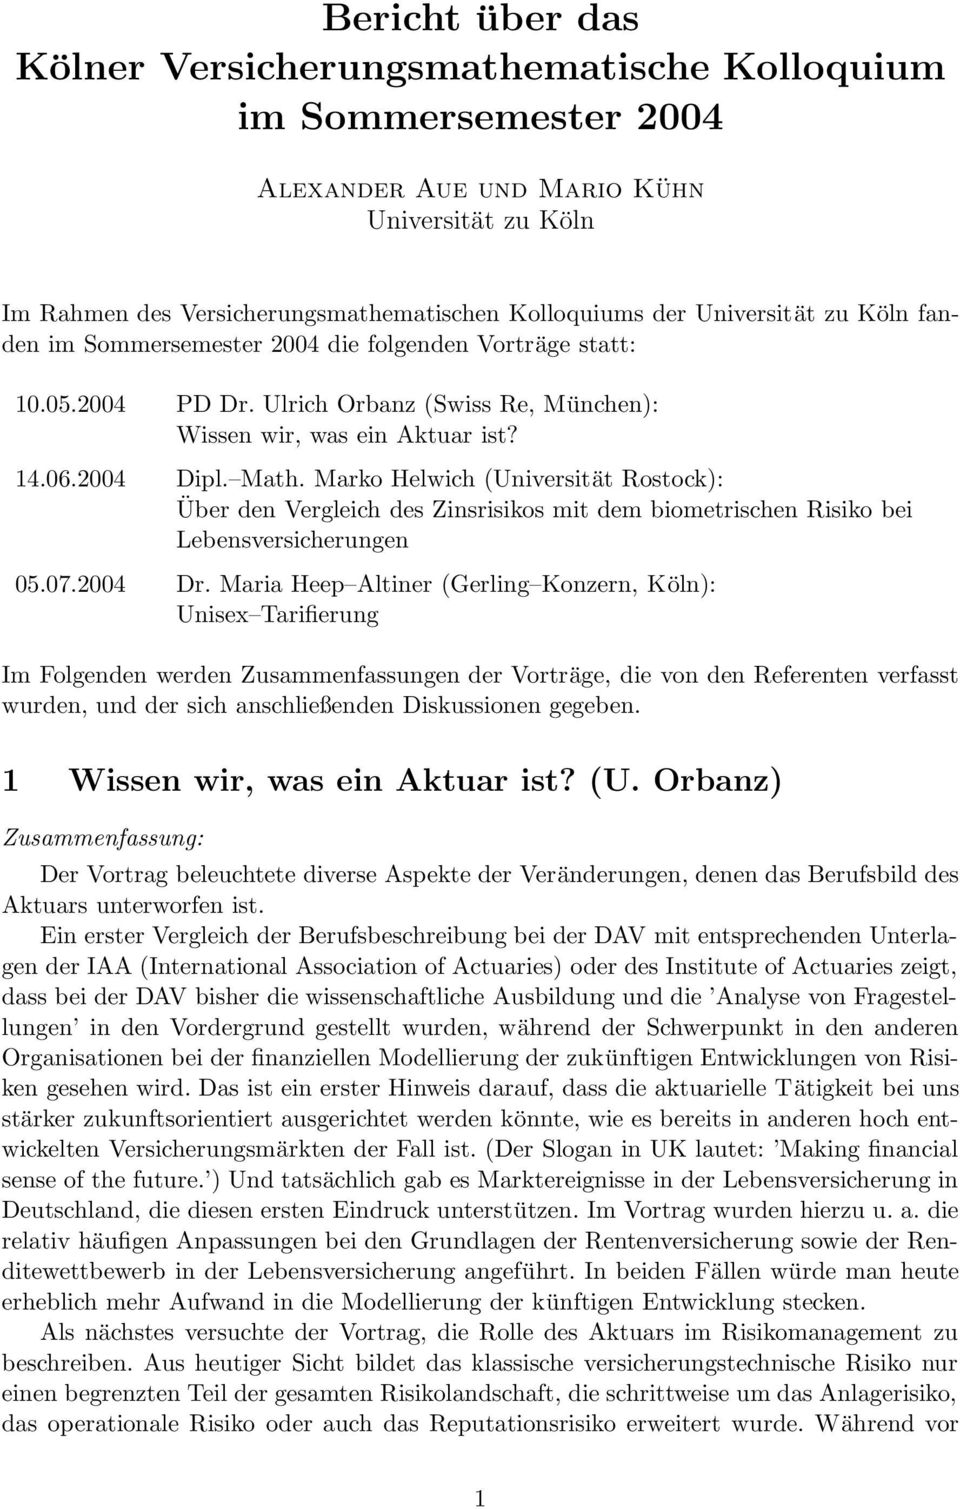 Marko Helwih (Universität Rostok): Über den ergleih des Zinsrisikos mit dem biometrishen Risiko bei Lebensversiherungen 05.07.2004 Dr.